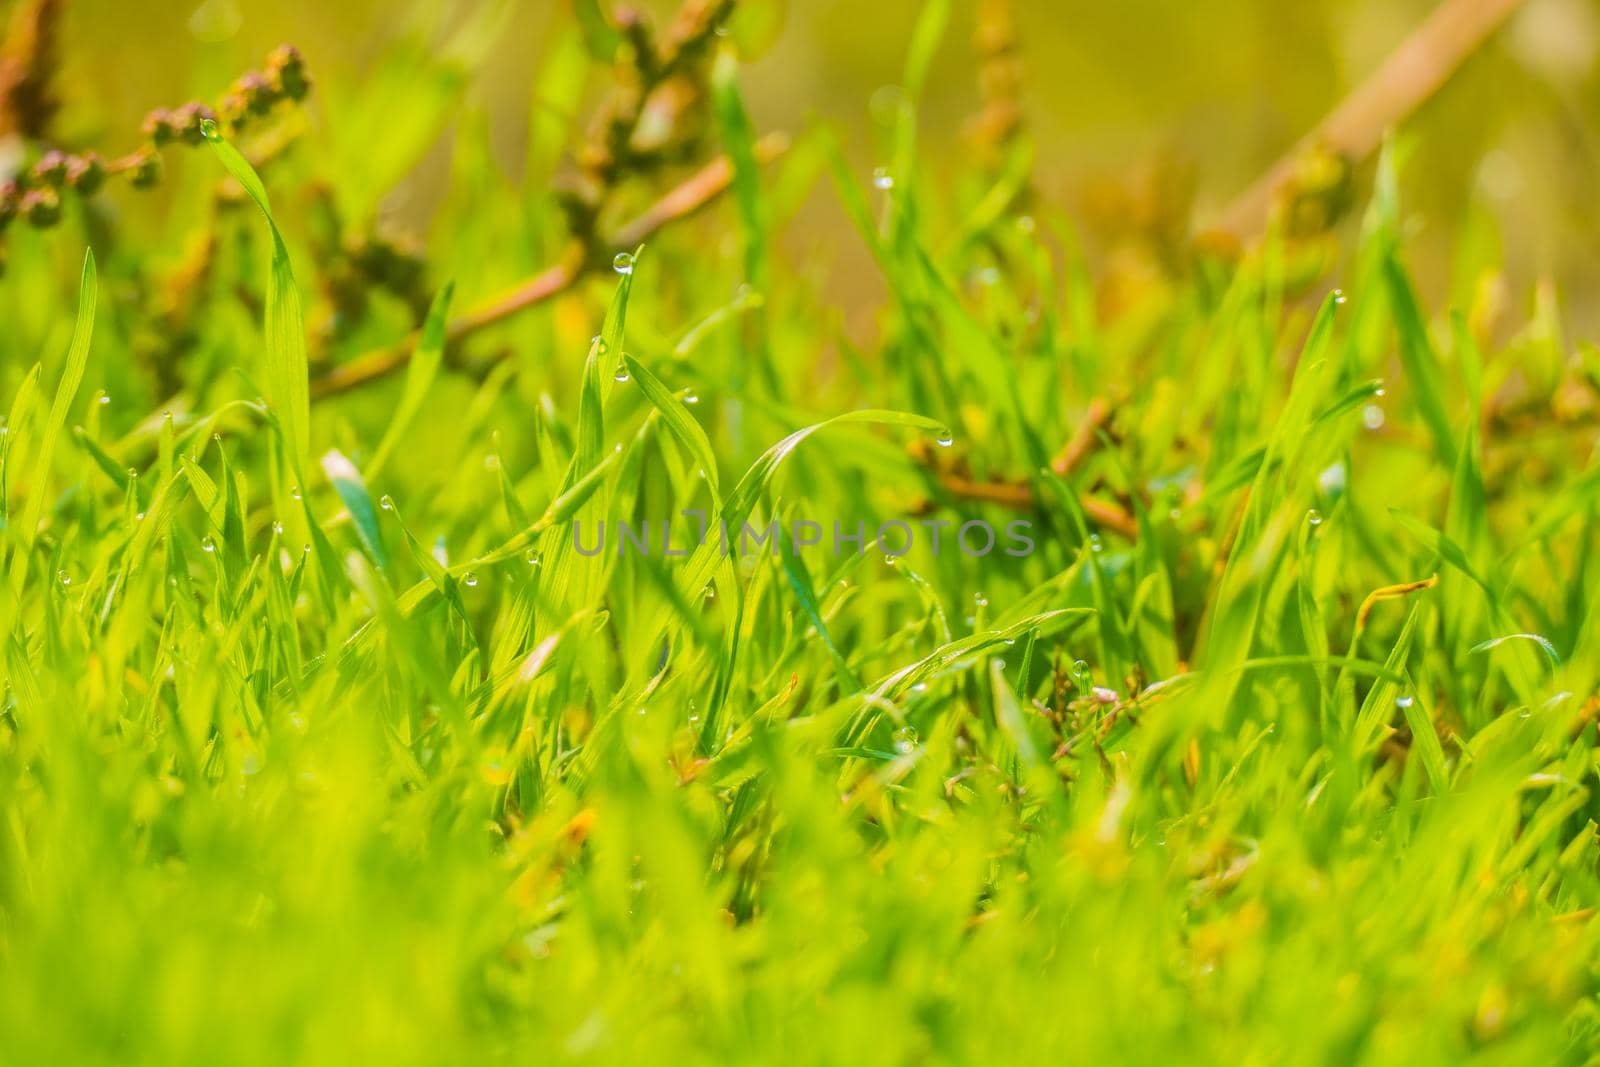 green grass texture by mosfet_ua